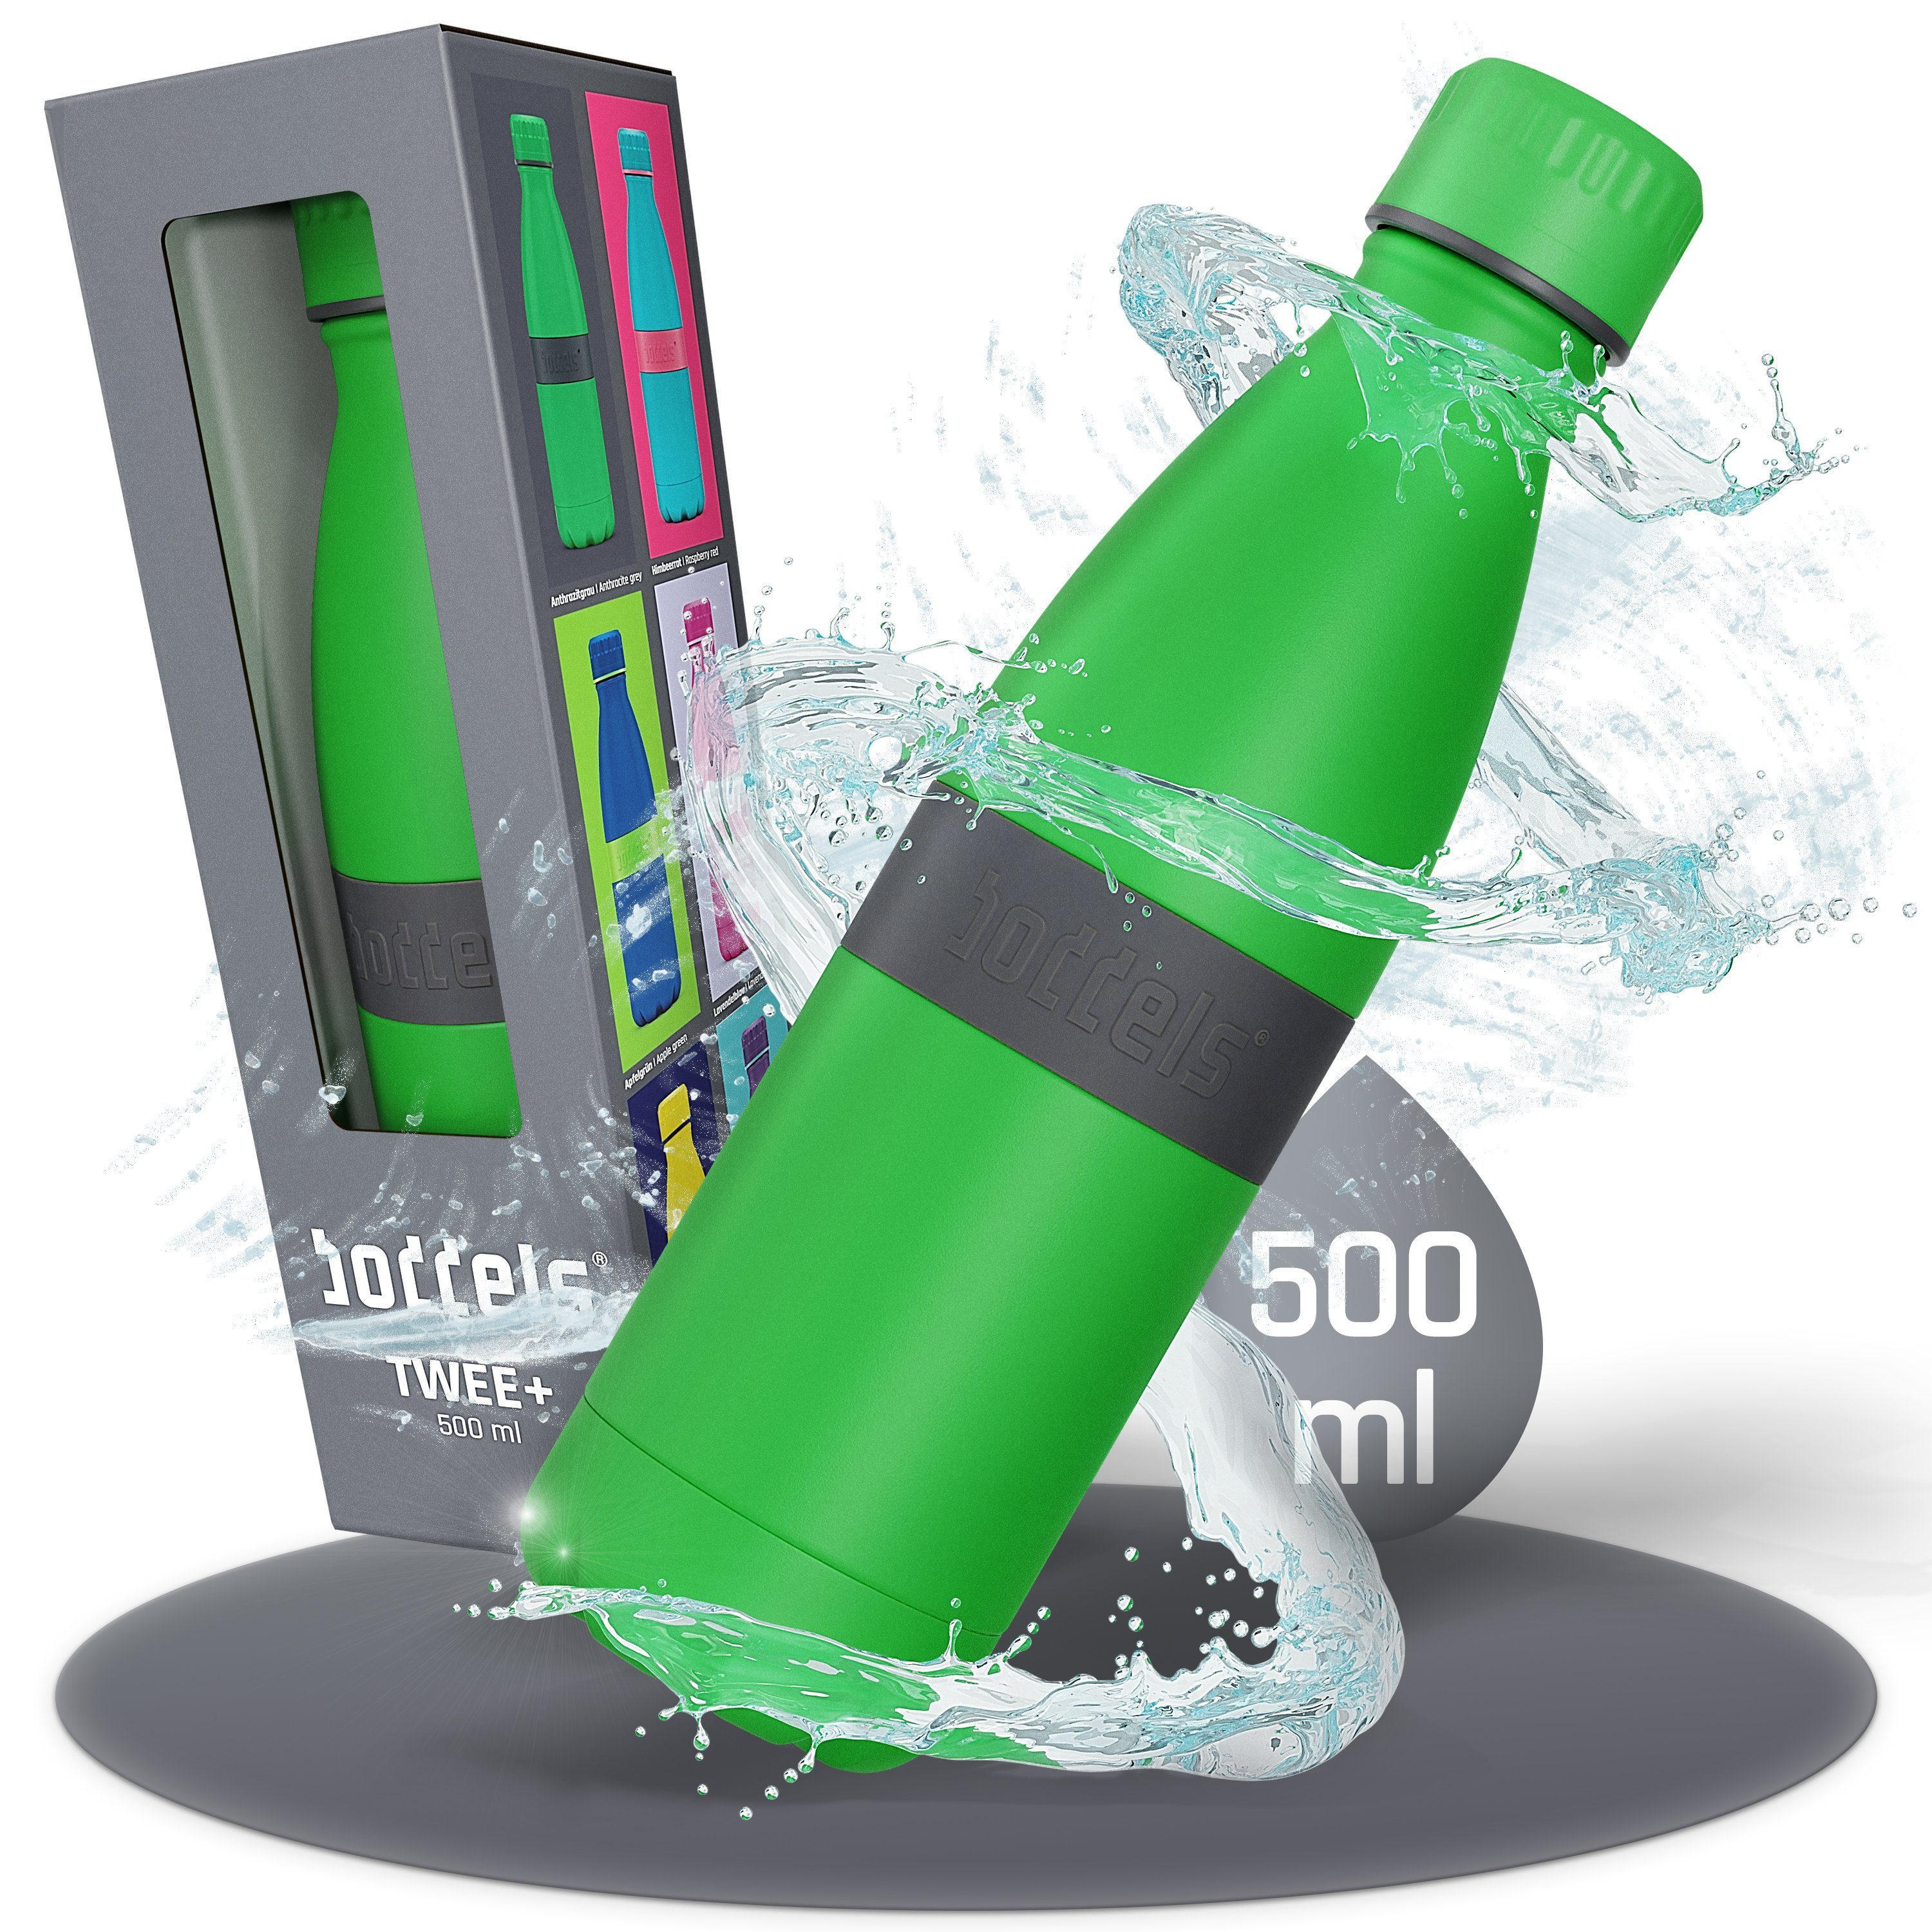 boddels Isolierflasche TWEE+ 500ml Edelstahl, bruchfest Grün aus auslaufsicher, - Anthrazitgrau / doppelwandig, Trinkflasche